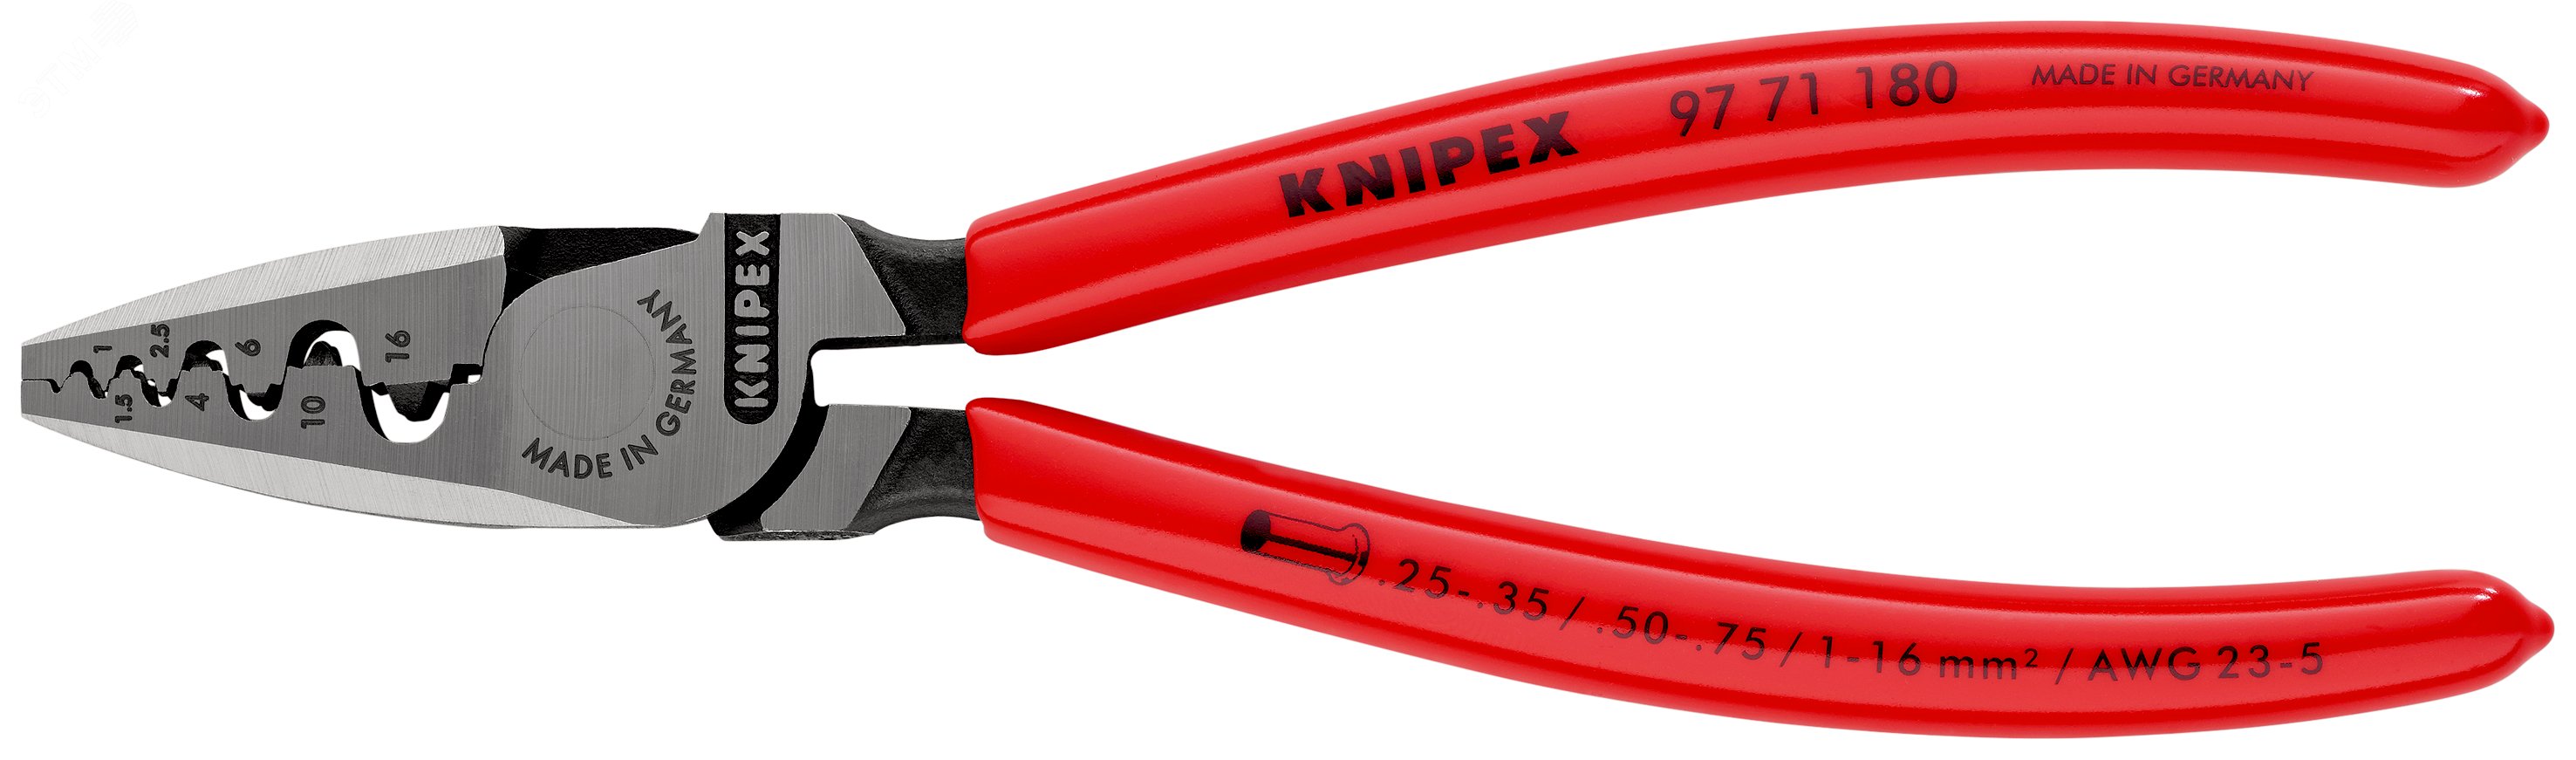 Пресс-клещи для обжима контактных гильз 9 гнезда 025-160мм (AWG 23-5) L=180мм обливные рукоятки KN-9771180 KNIPEX - превью 3